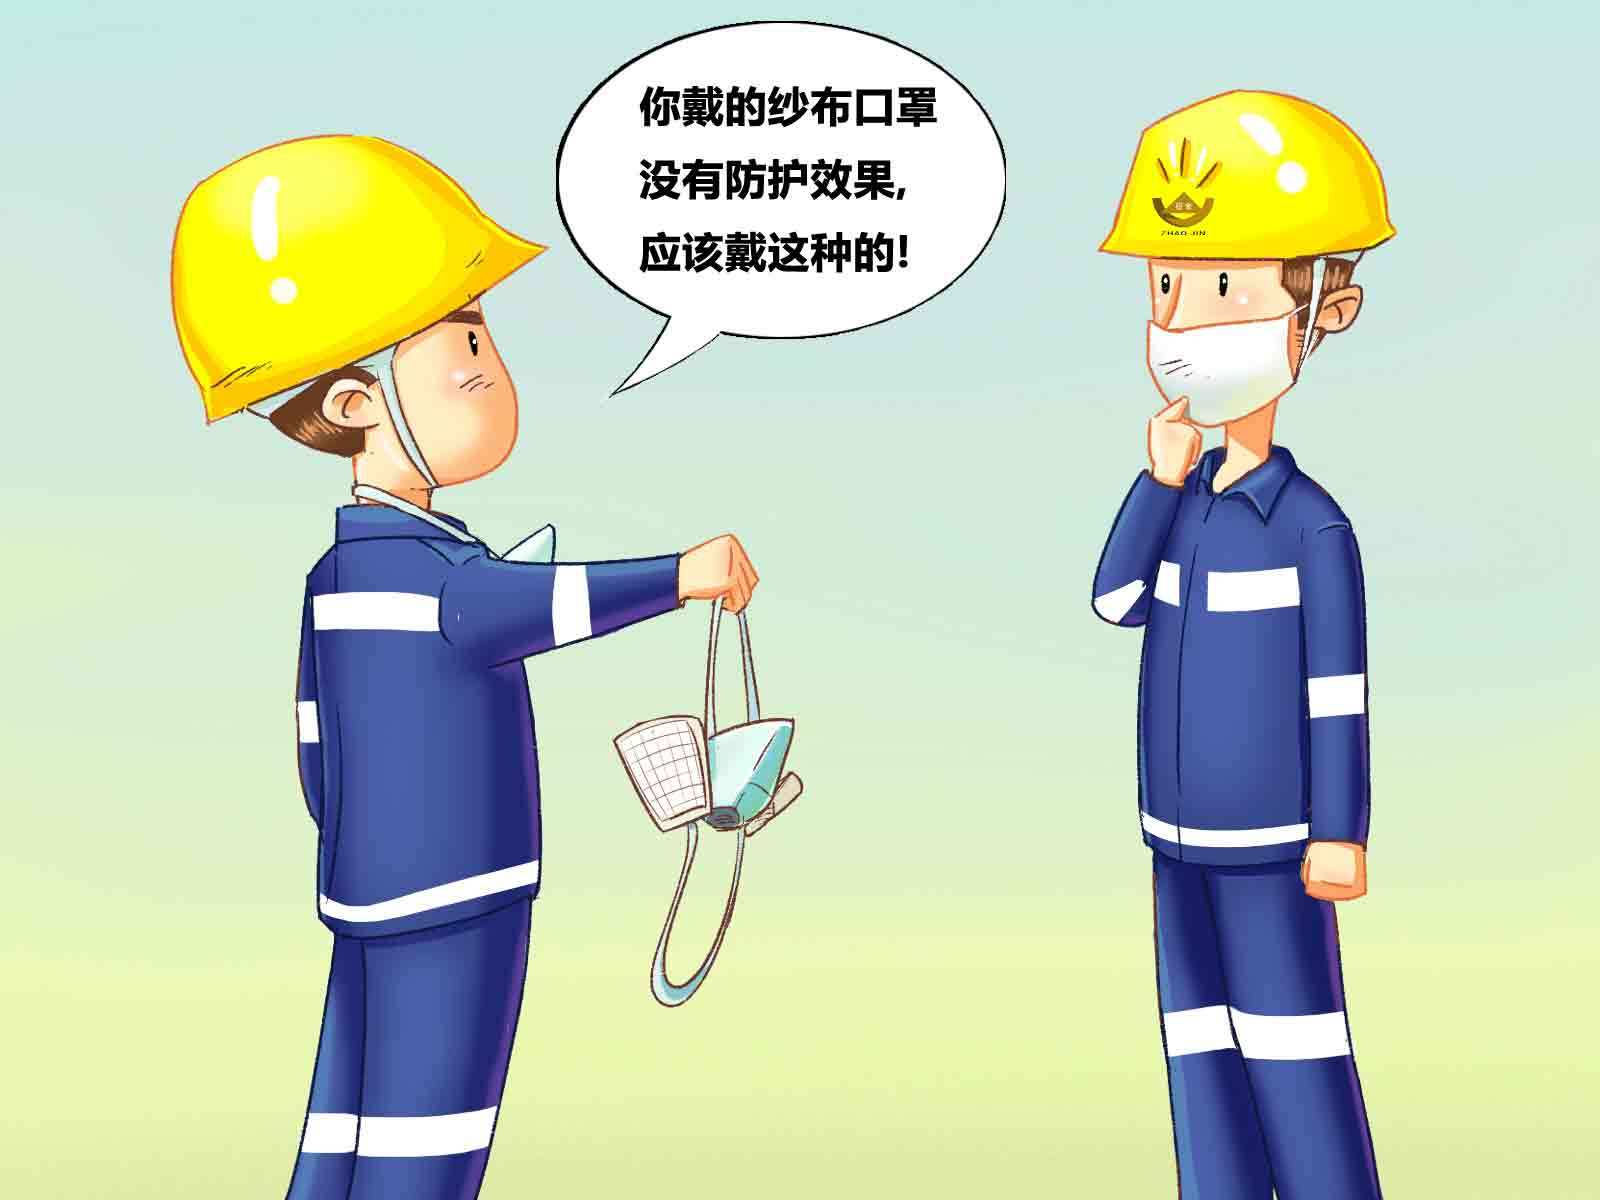 消防安全漫画 消防知识漫画_动漫_中国知识网